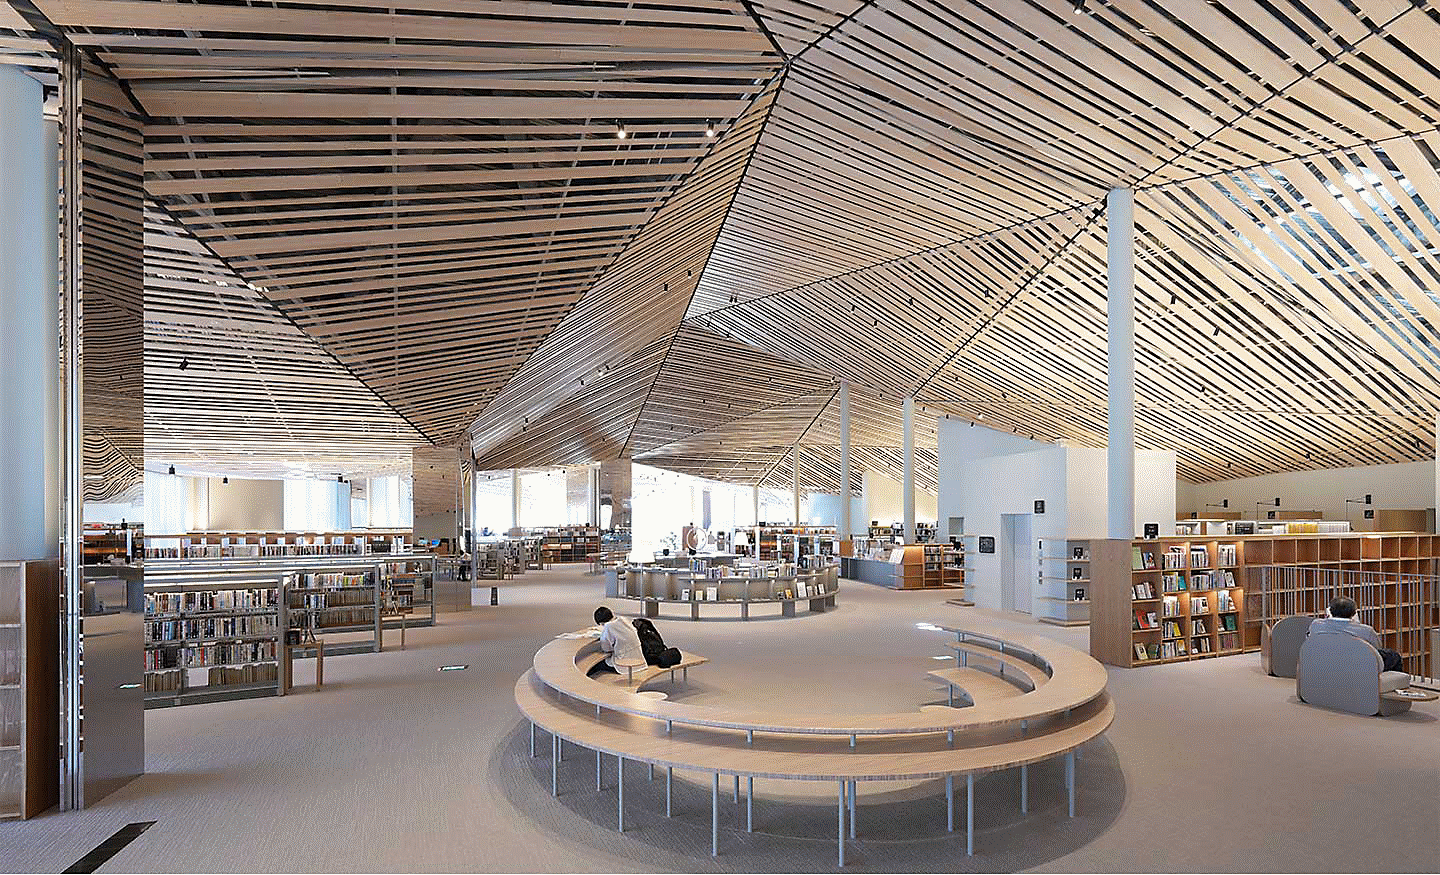 صورة المساحة الداخلية لمكتبة كبيرة بتصميم متقن باستخدام عدة ألواح خشبية مستقيمة على السقف مع دقة عرض لكل زاوية من الشاشة